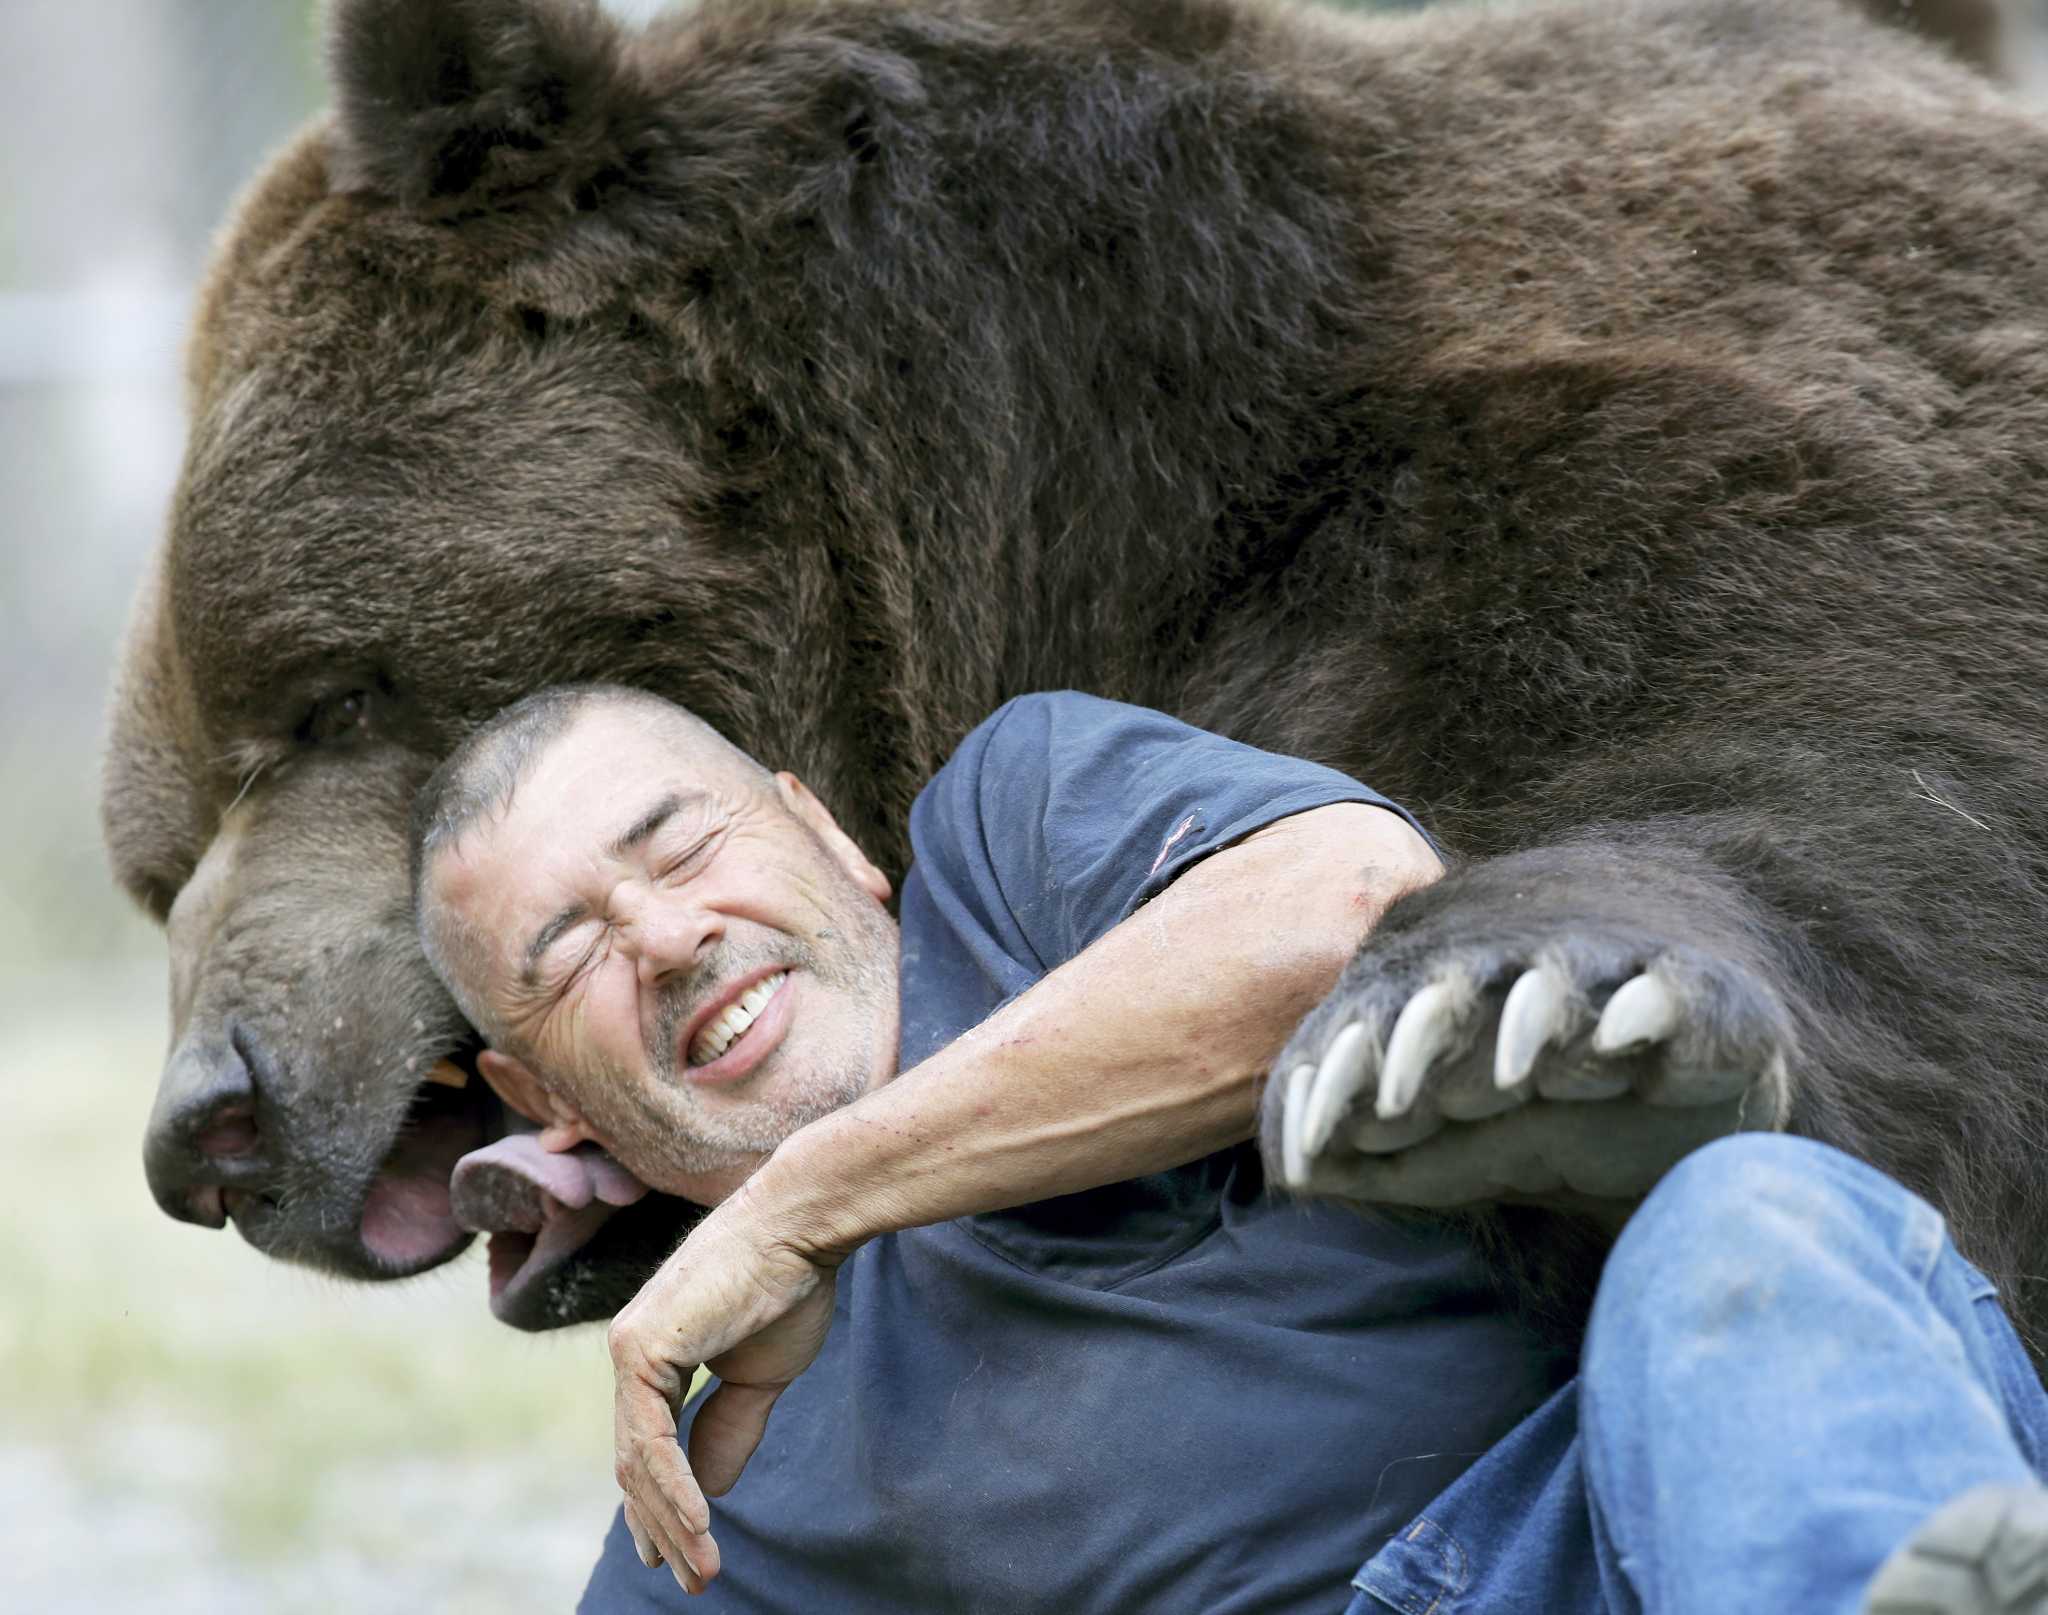 Медведь по сравнению с человеком фото